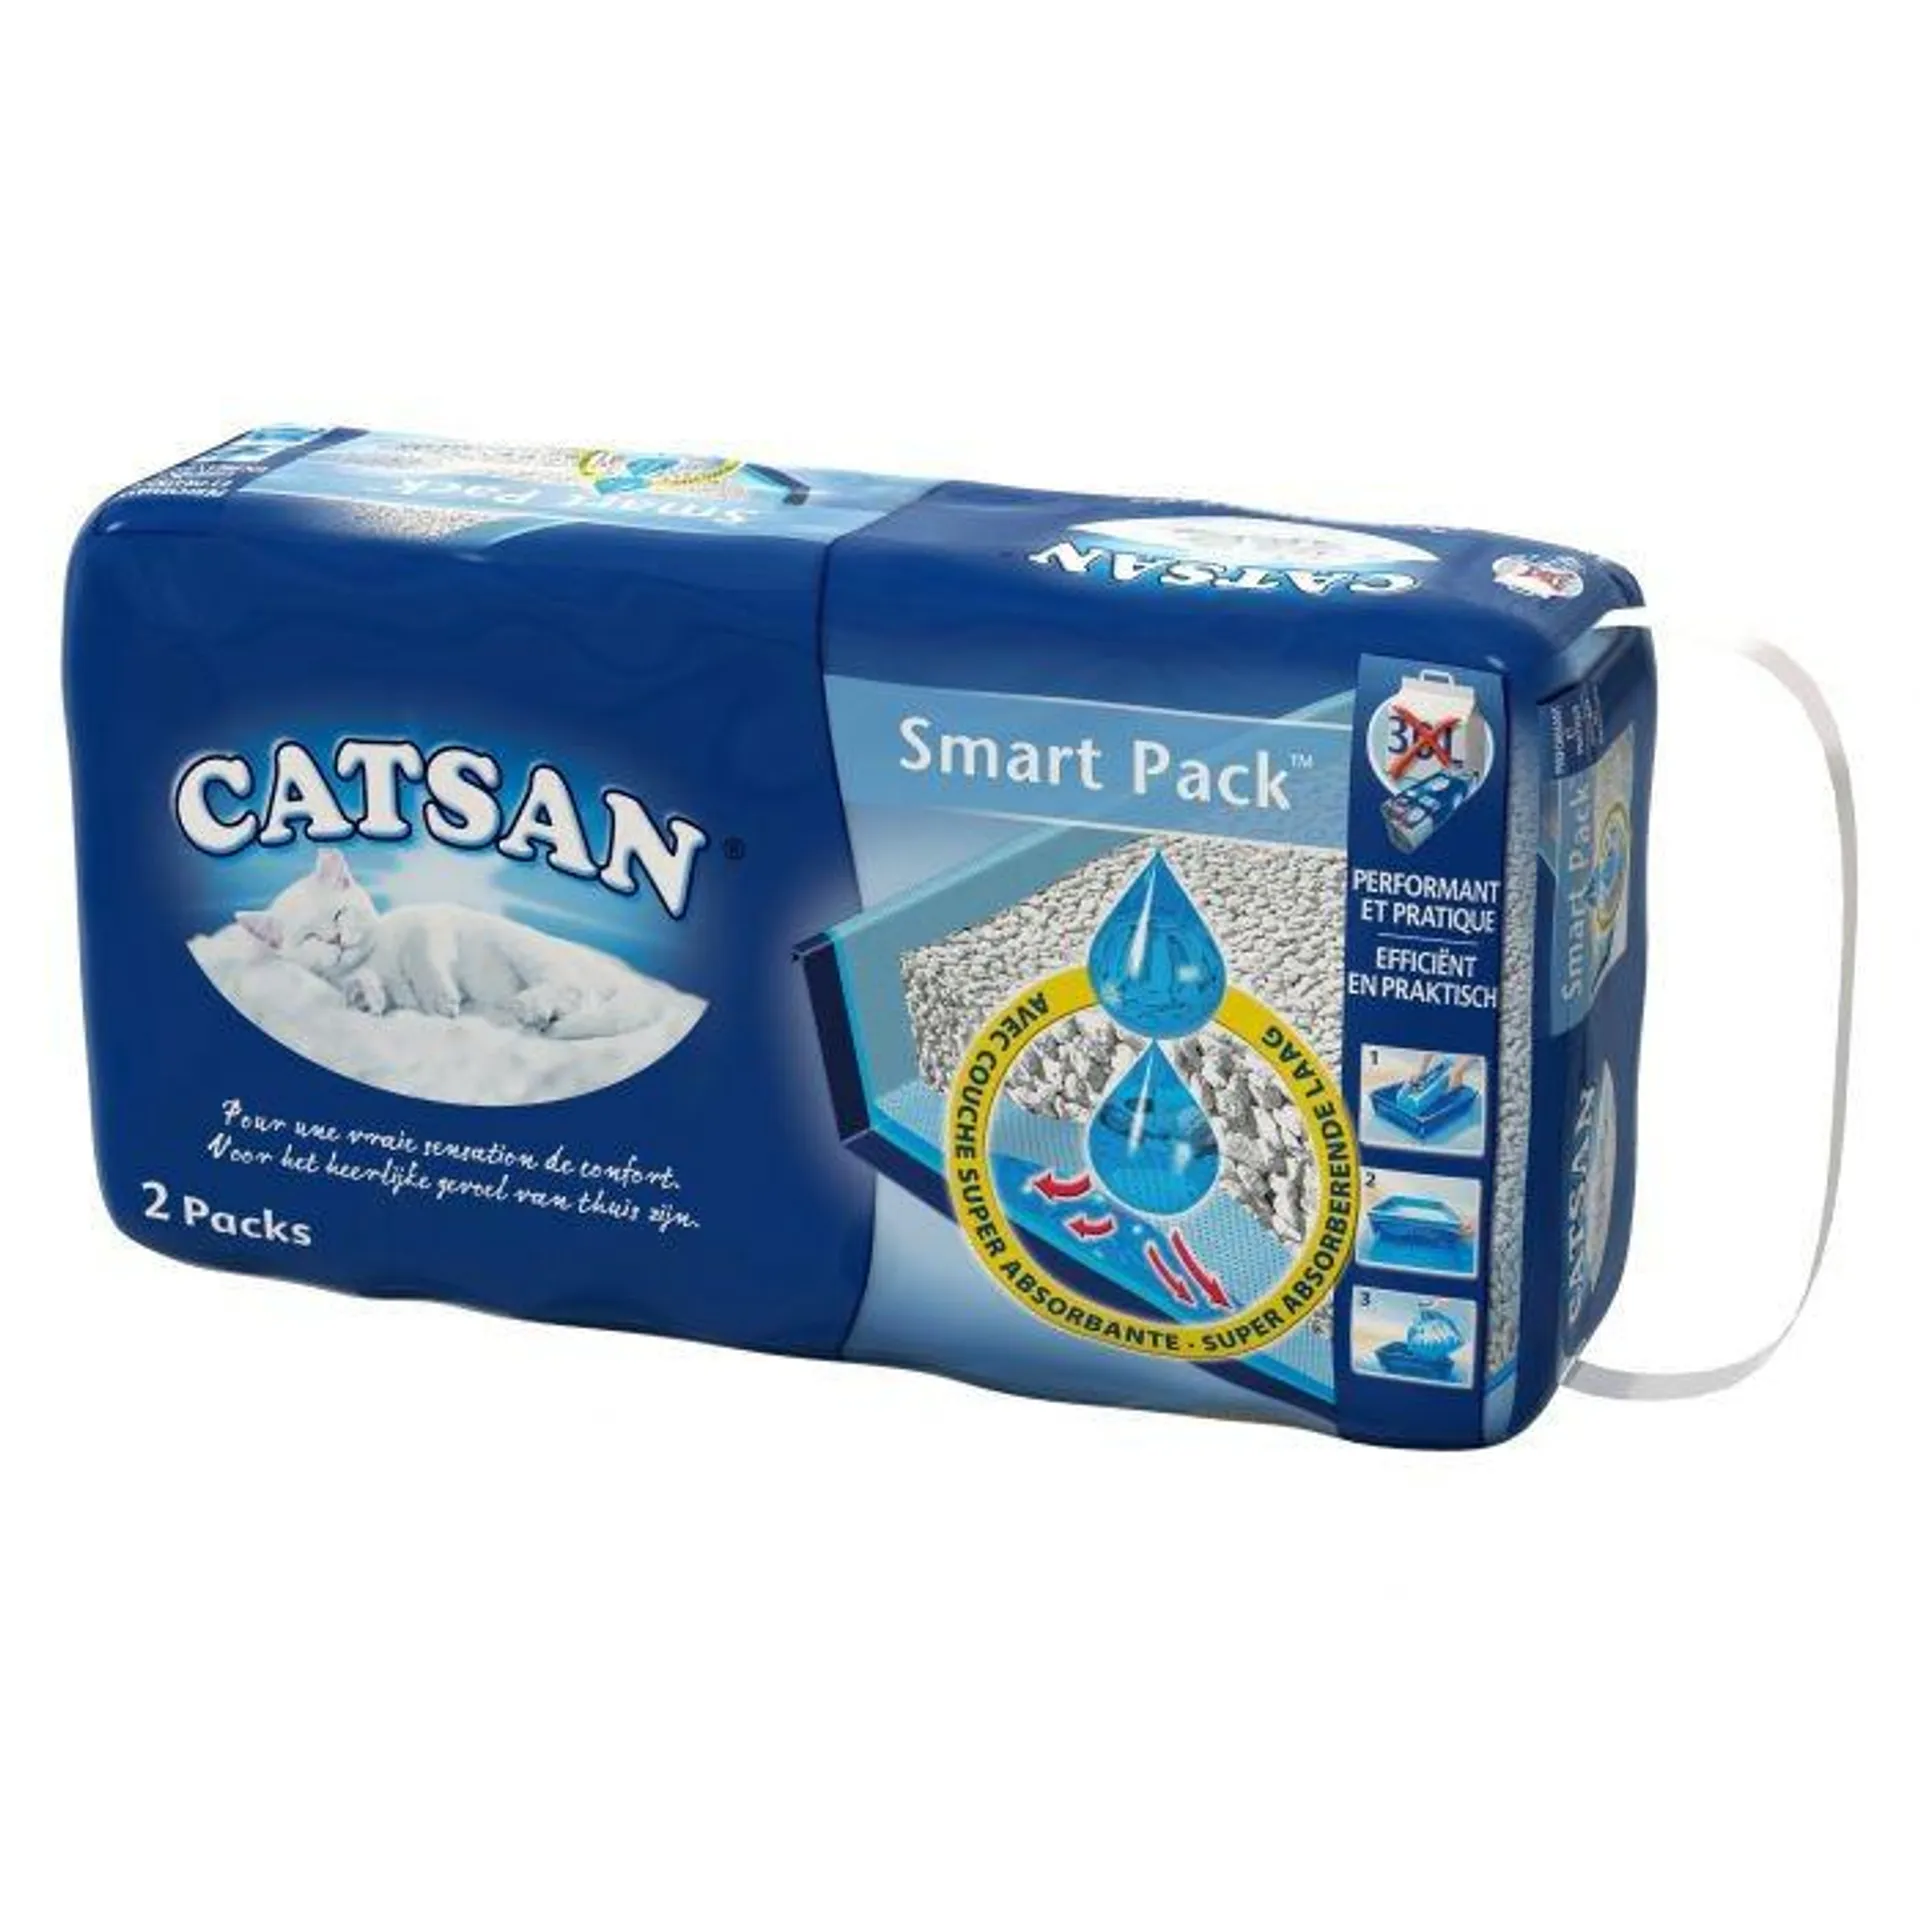 Catsan smart pack litière pour chat 2 paquets